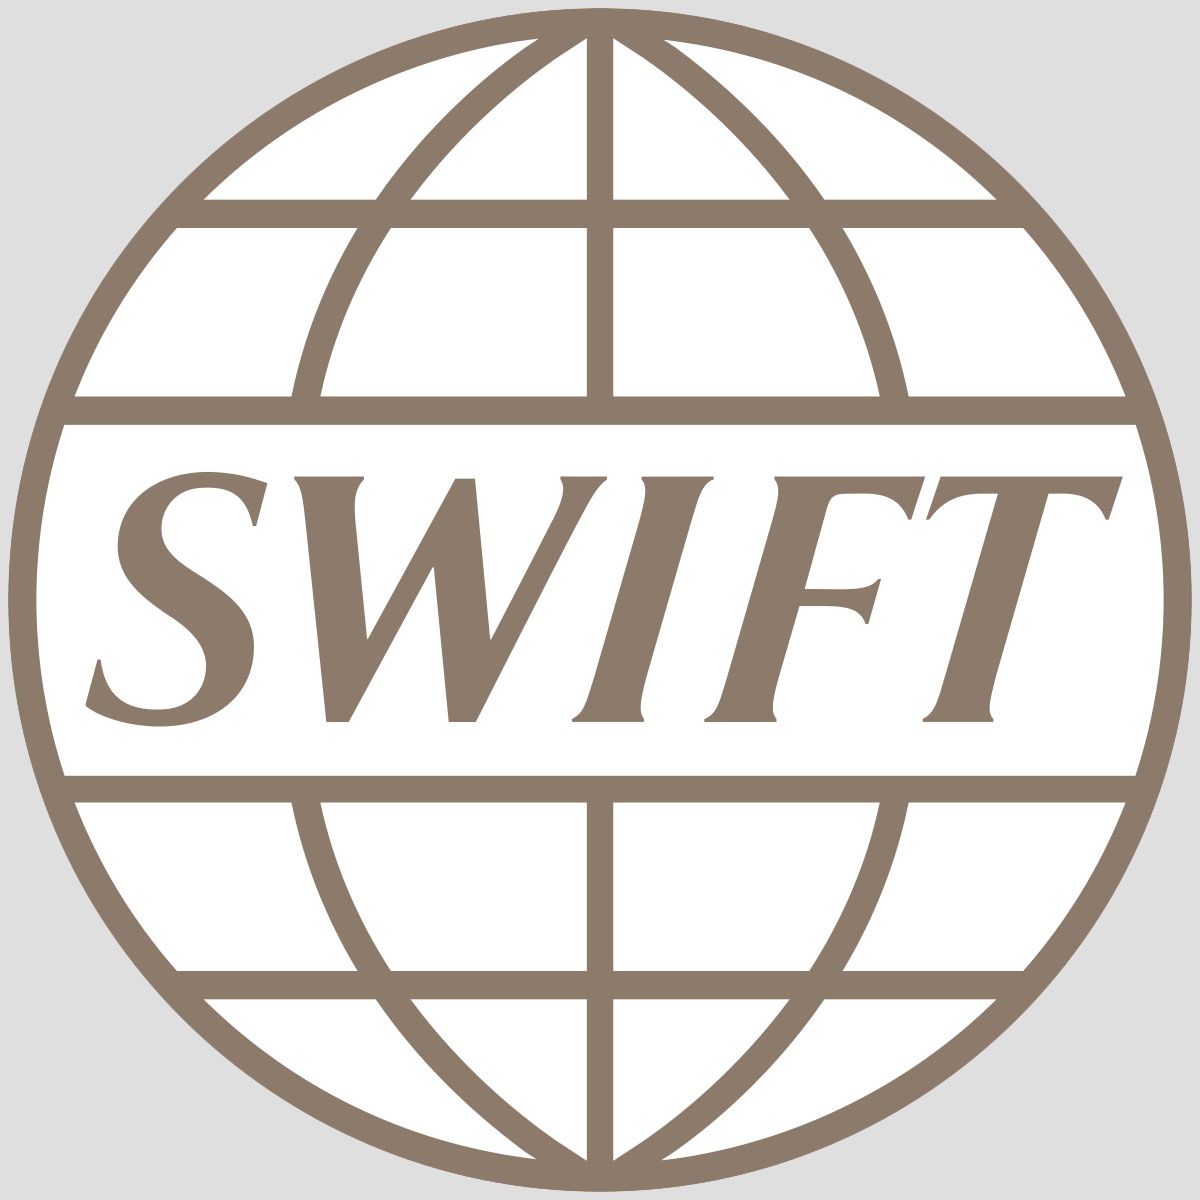 СВИФТ зарабатывает в России не менее 4 миллиардов долларов ежегодно.